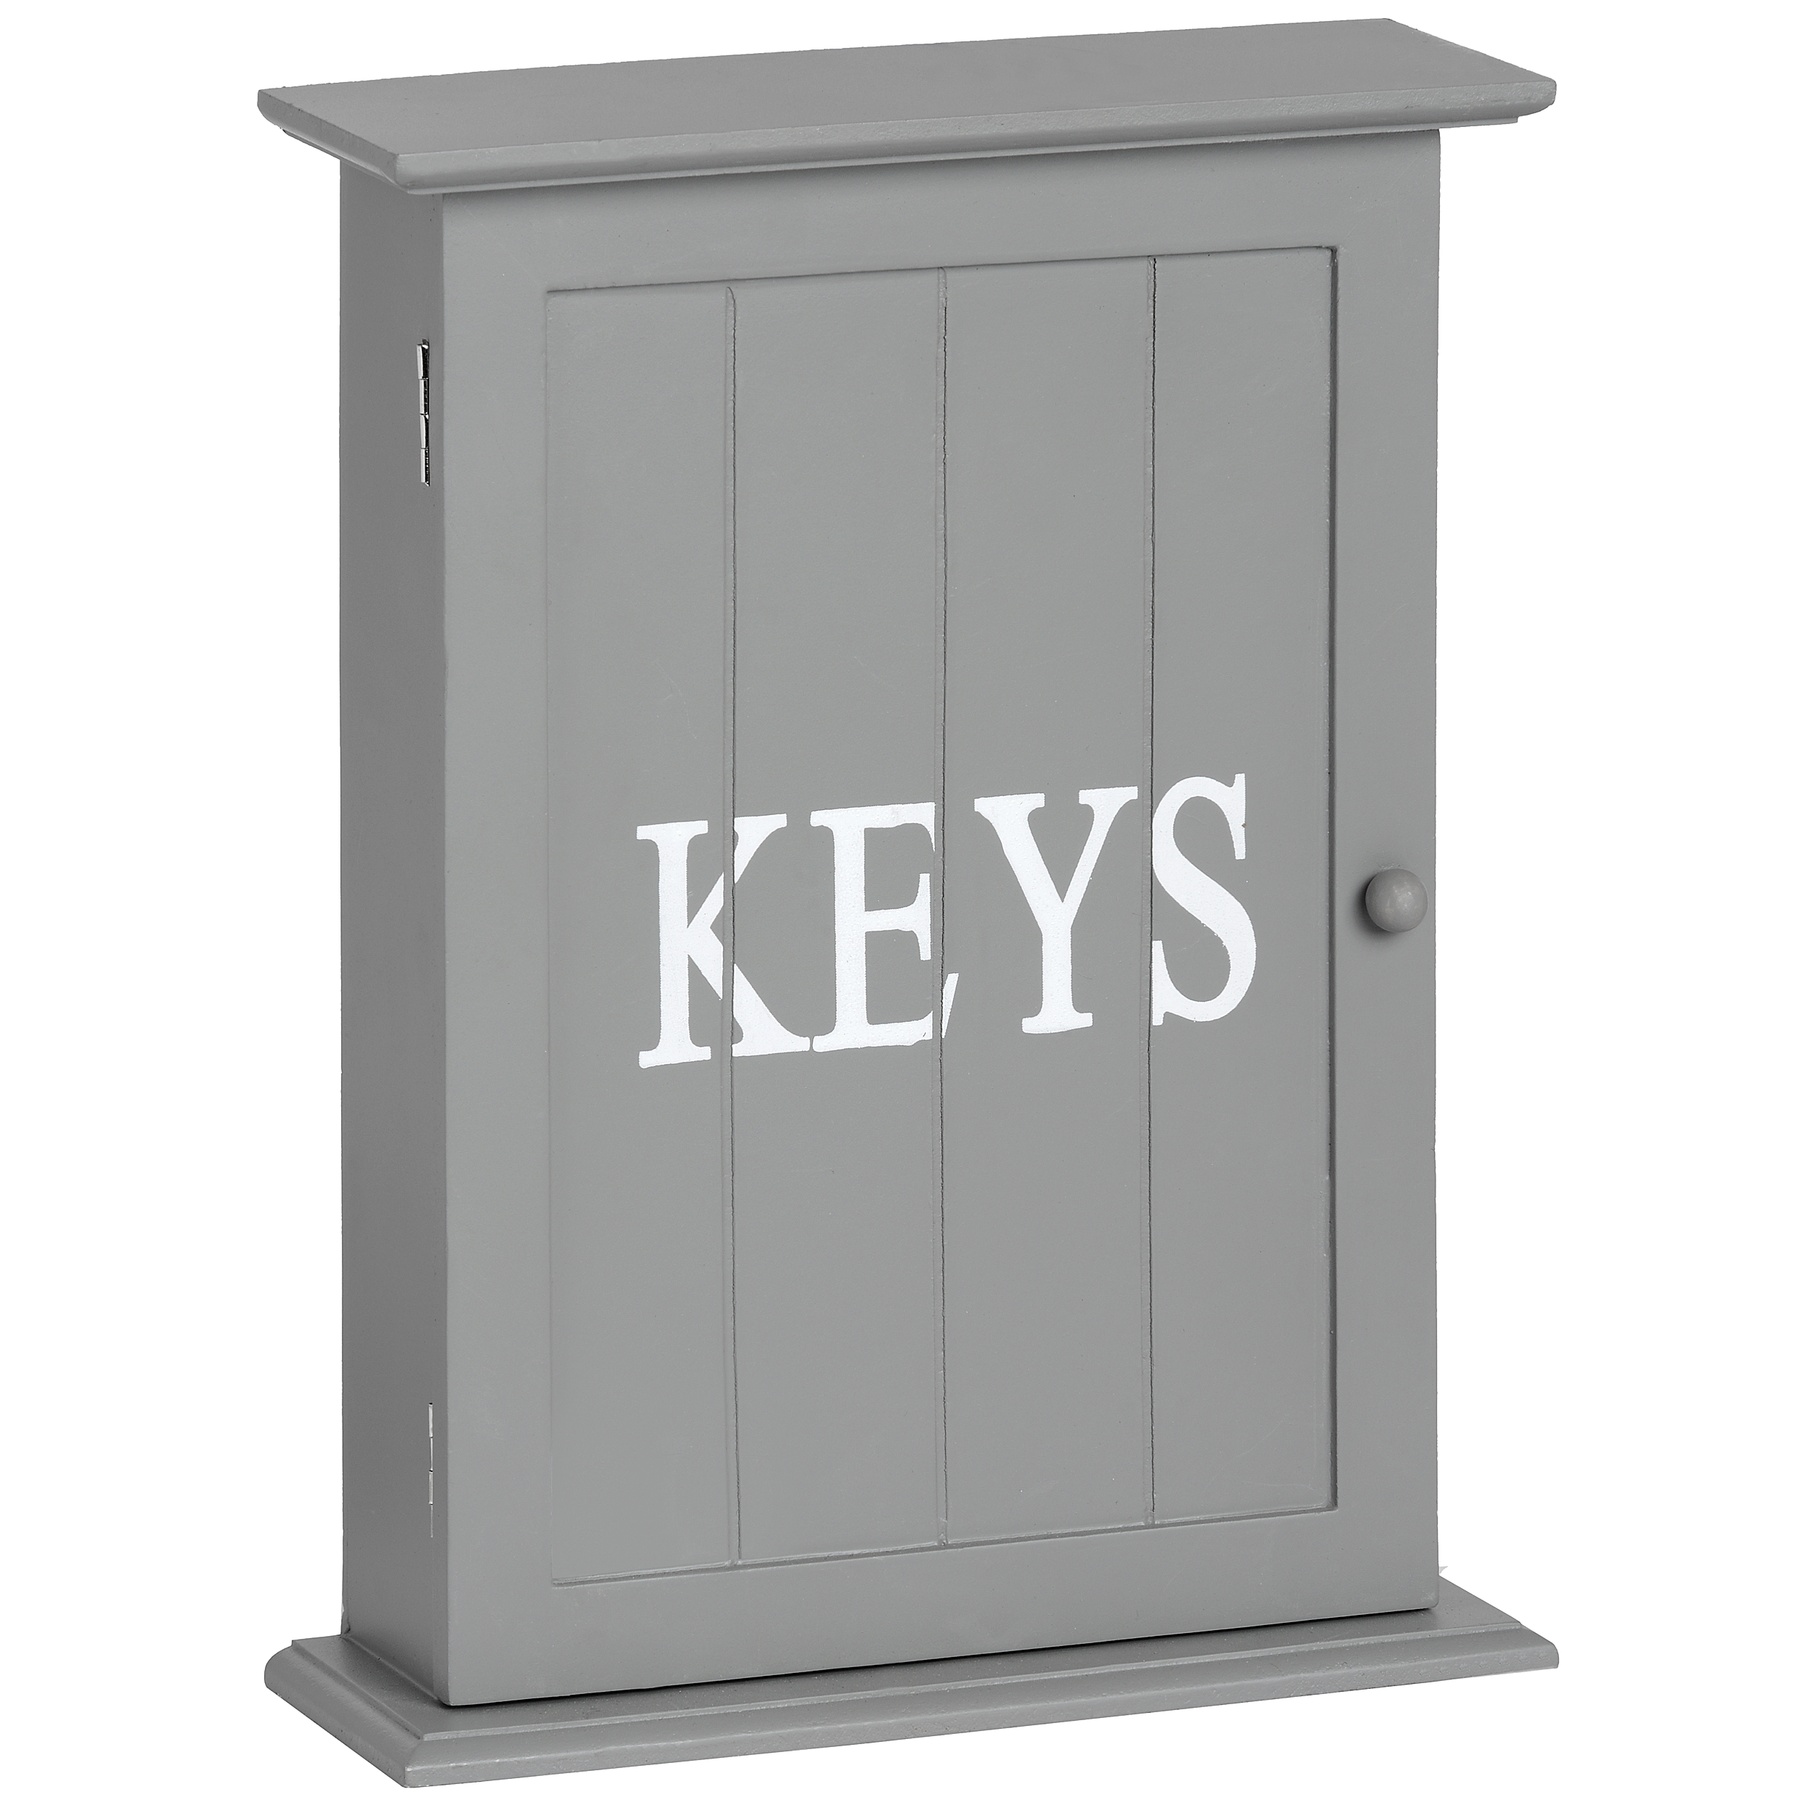 Keys Box